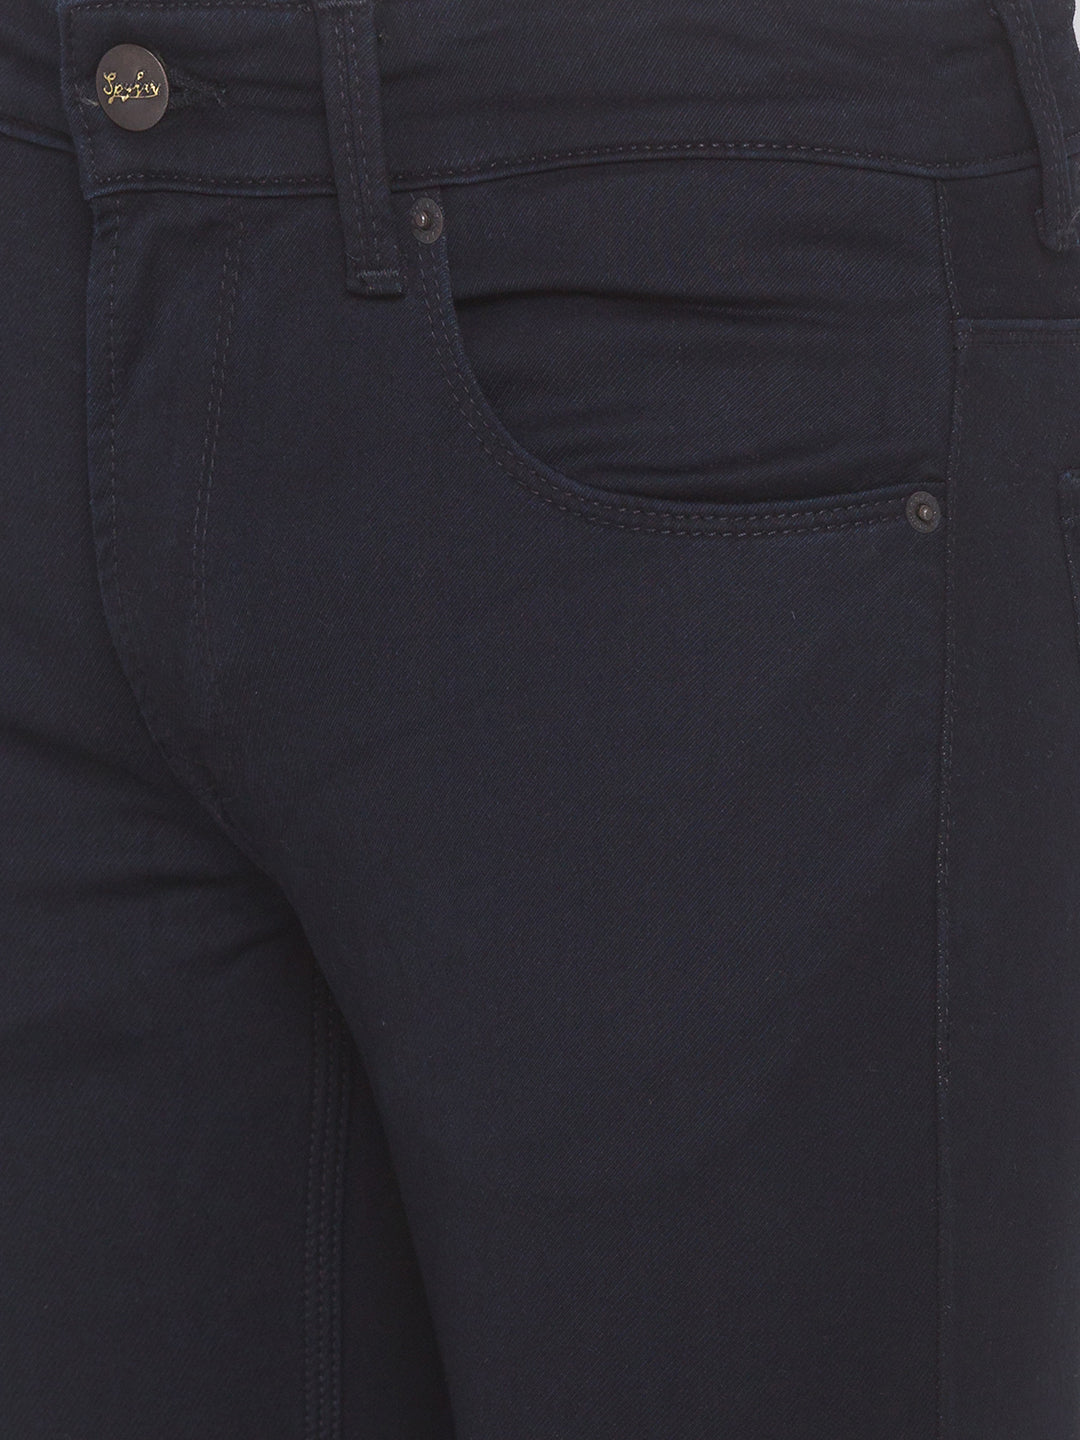 Spykar Men Blue Super Slim Fit Tapered length Jeans (Super Skinny)